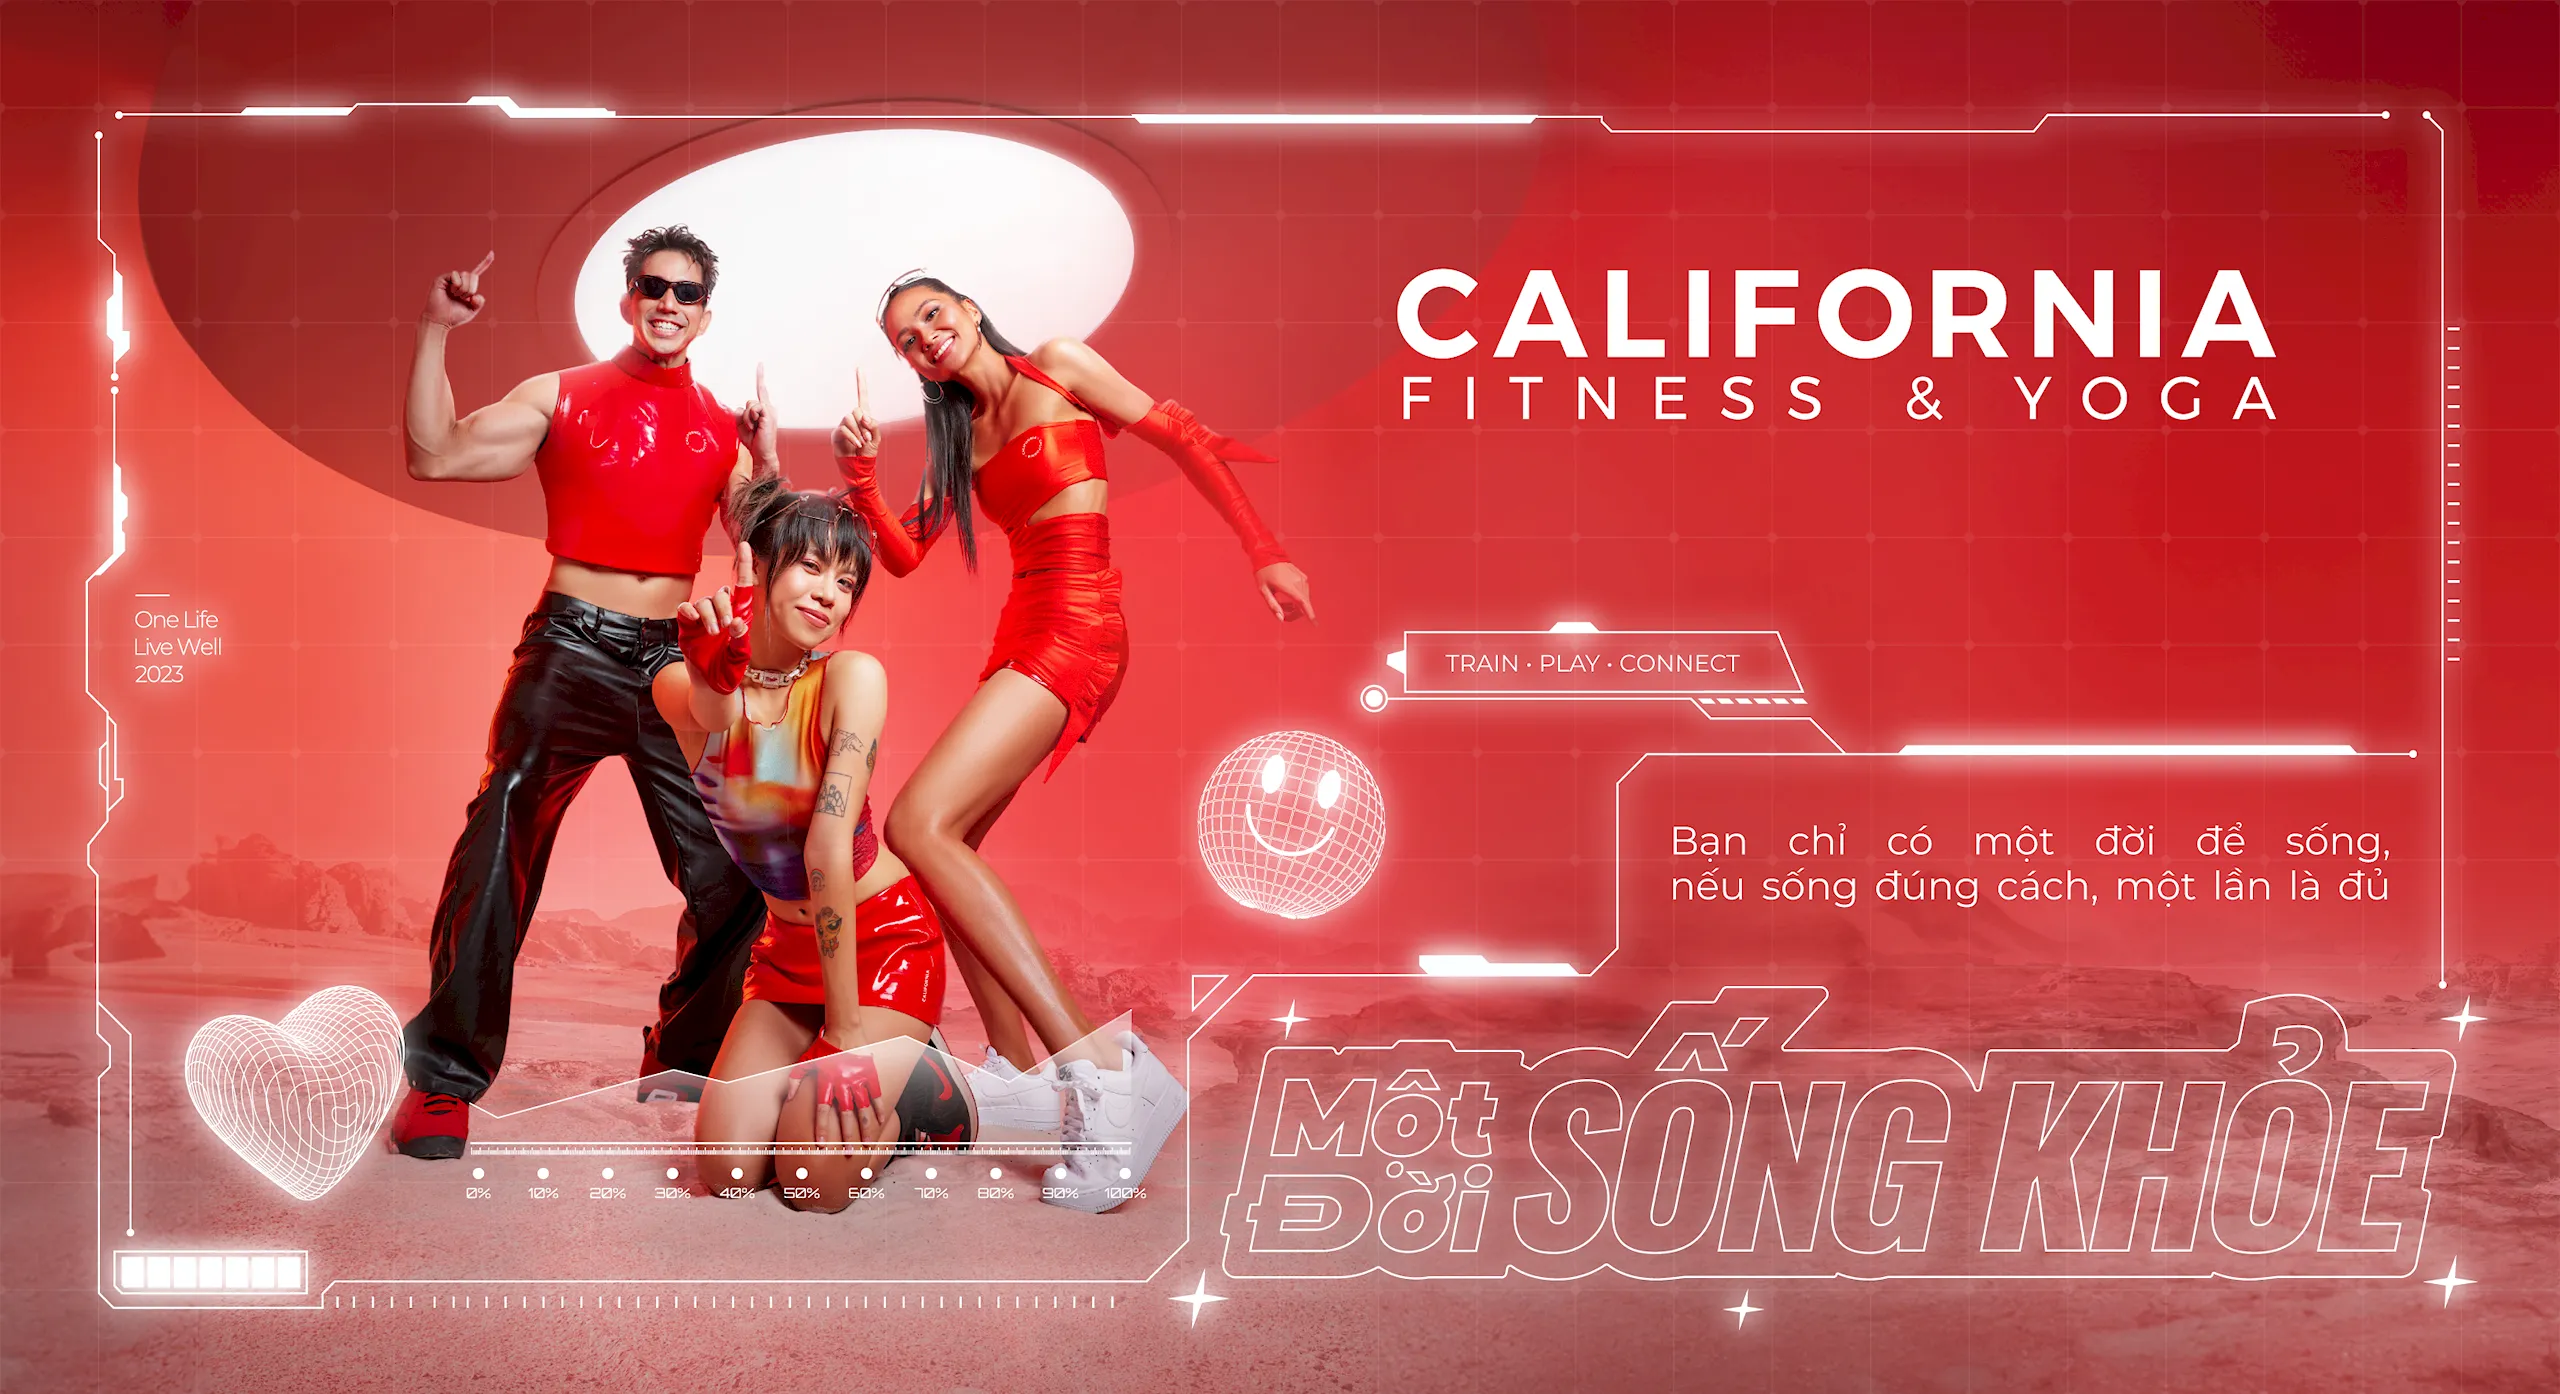 California Fitness cách mạng hoá thói quen chăm sóc sức khỏe của người Việt với chiến dịch Một Đời Sống Khỏe